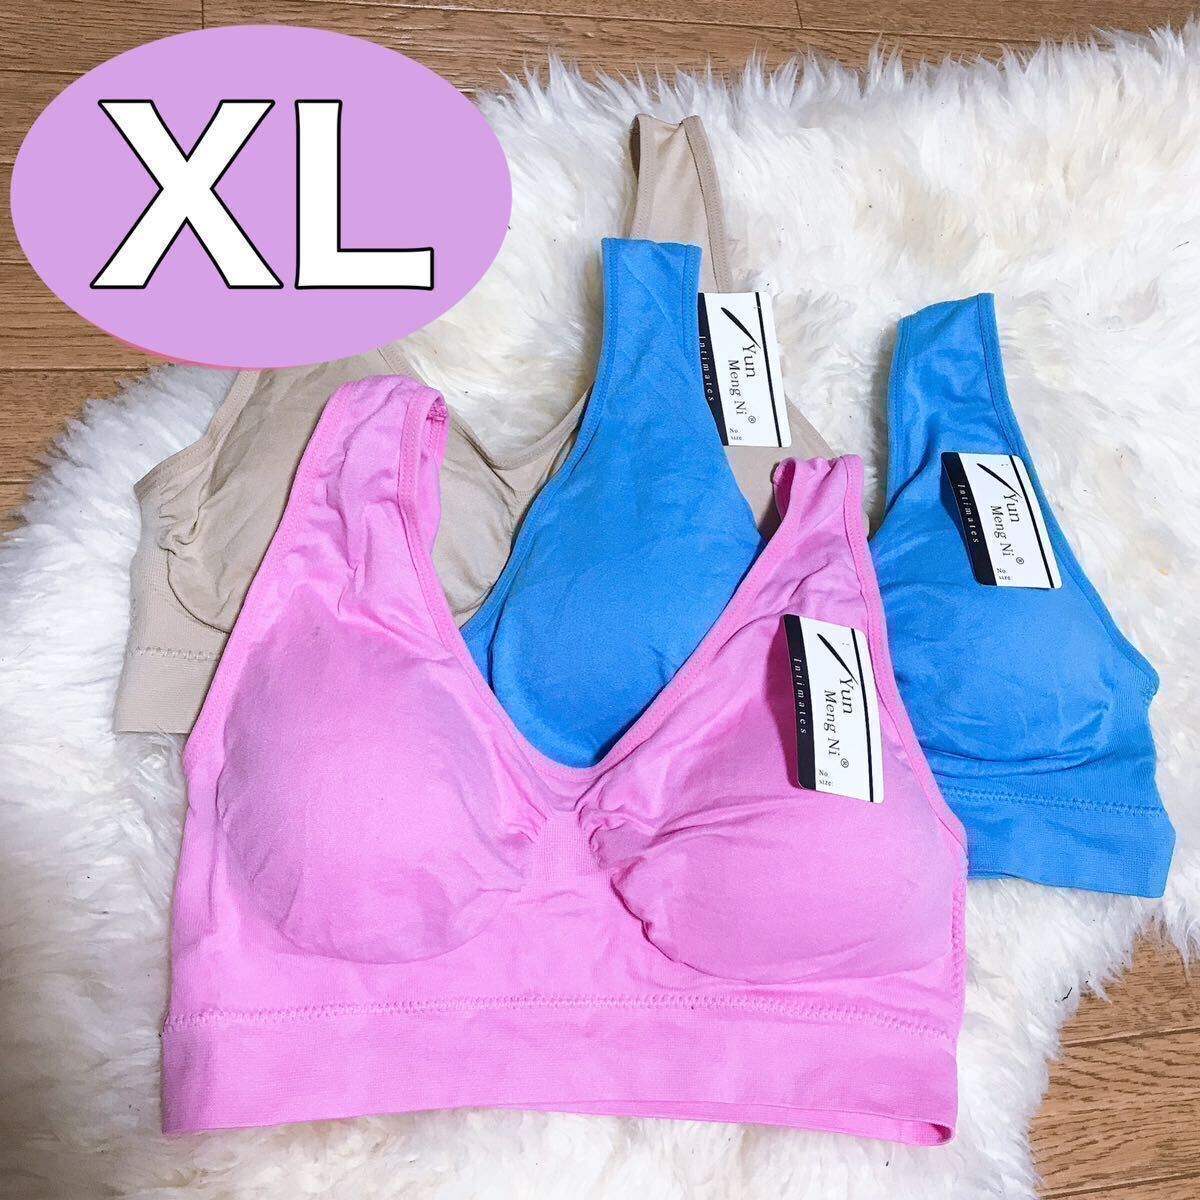  non wire bra 3 pieces set XL blue blue beige . color pink Night bla sports bra nursing blaE75 F75 G75 C80 D80